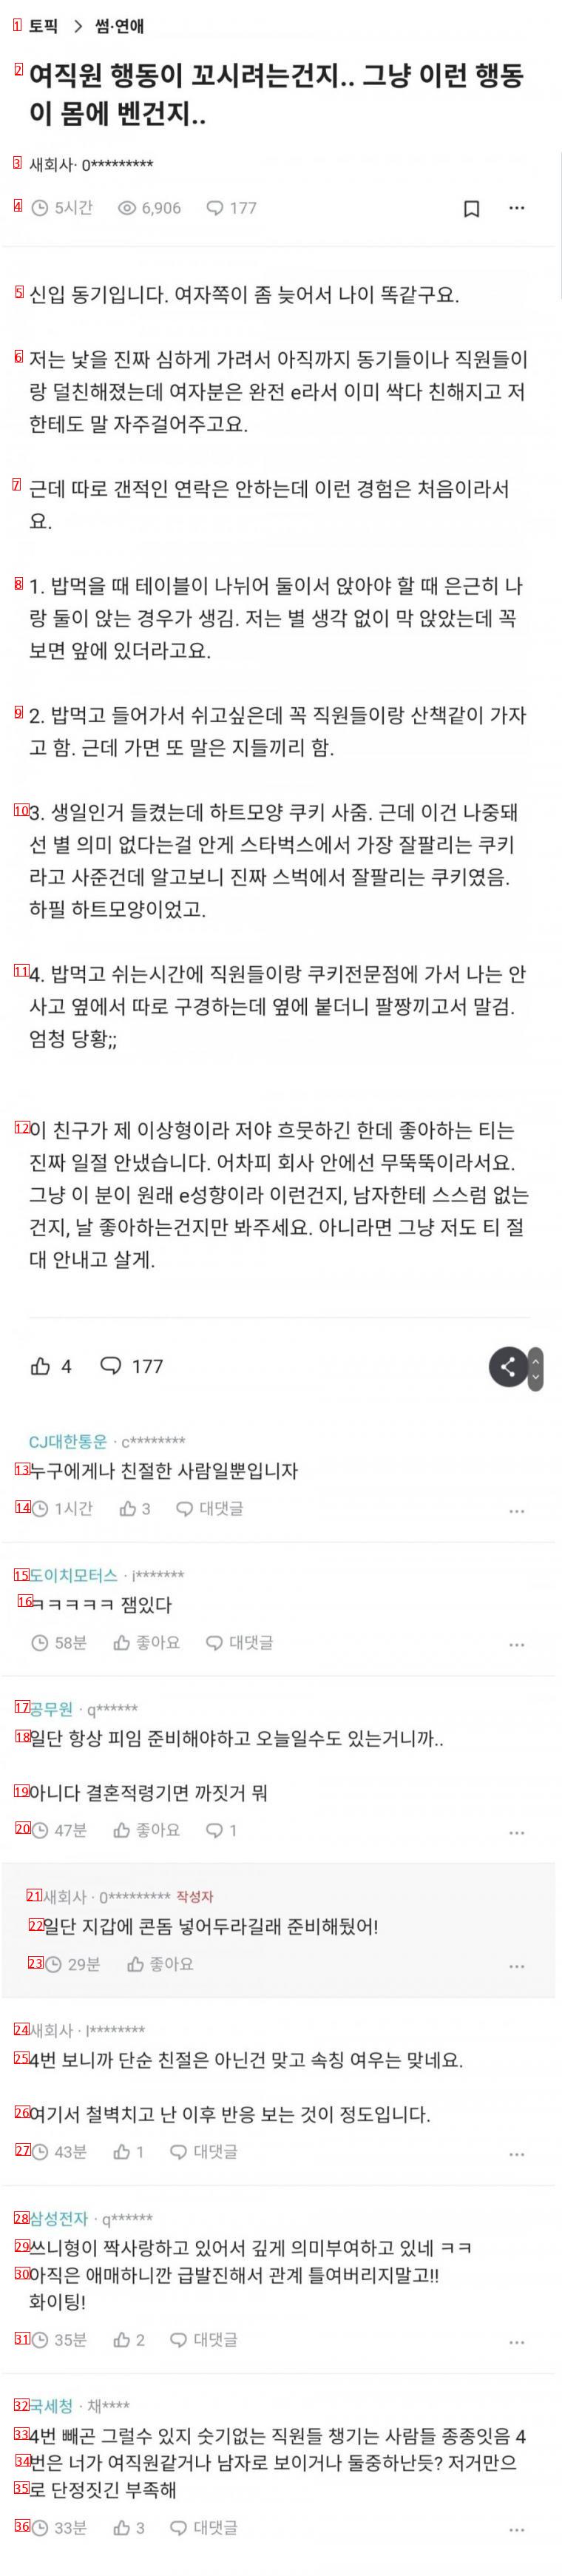 댓글 177개 달린 신입 여직원 행동